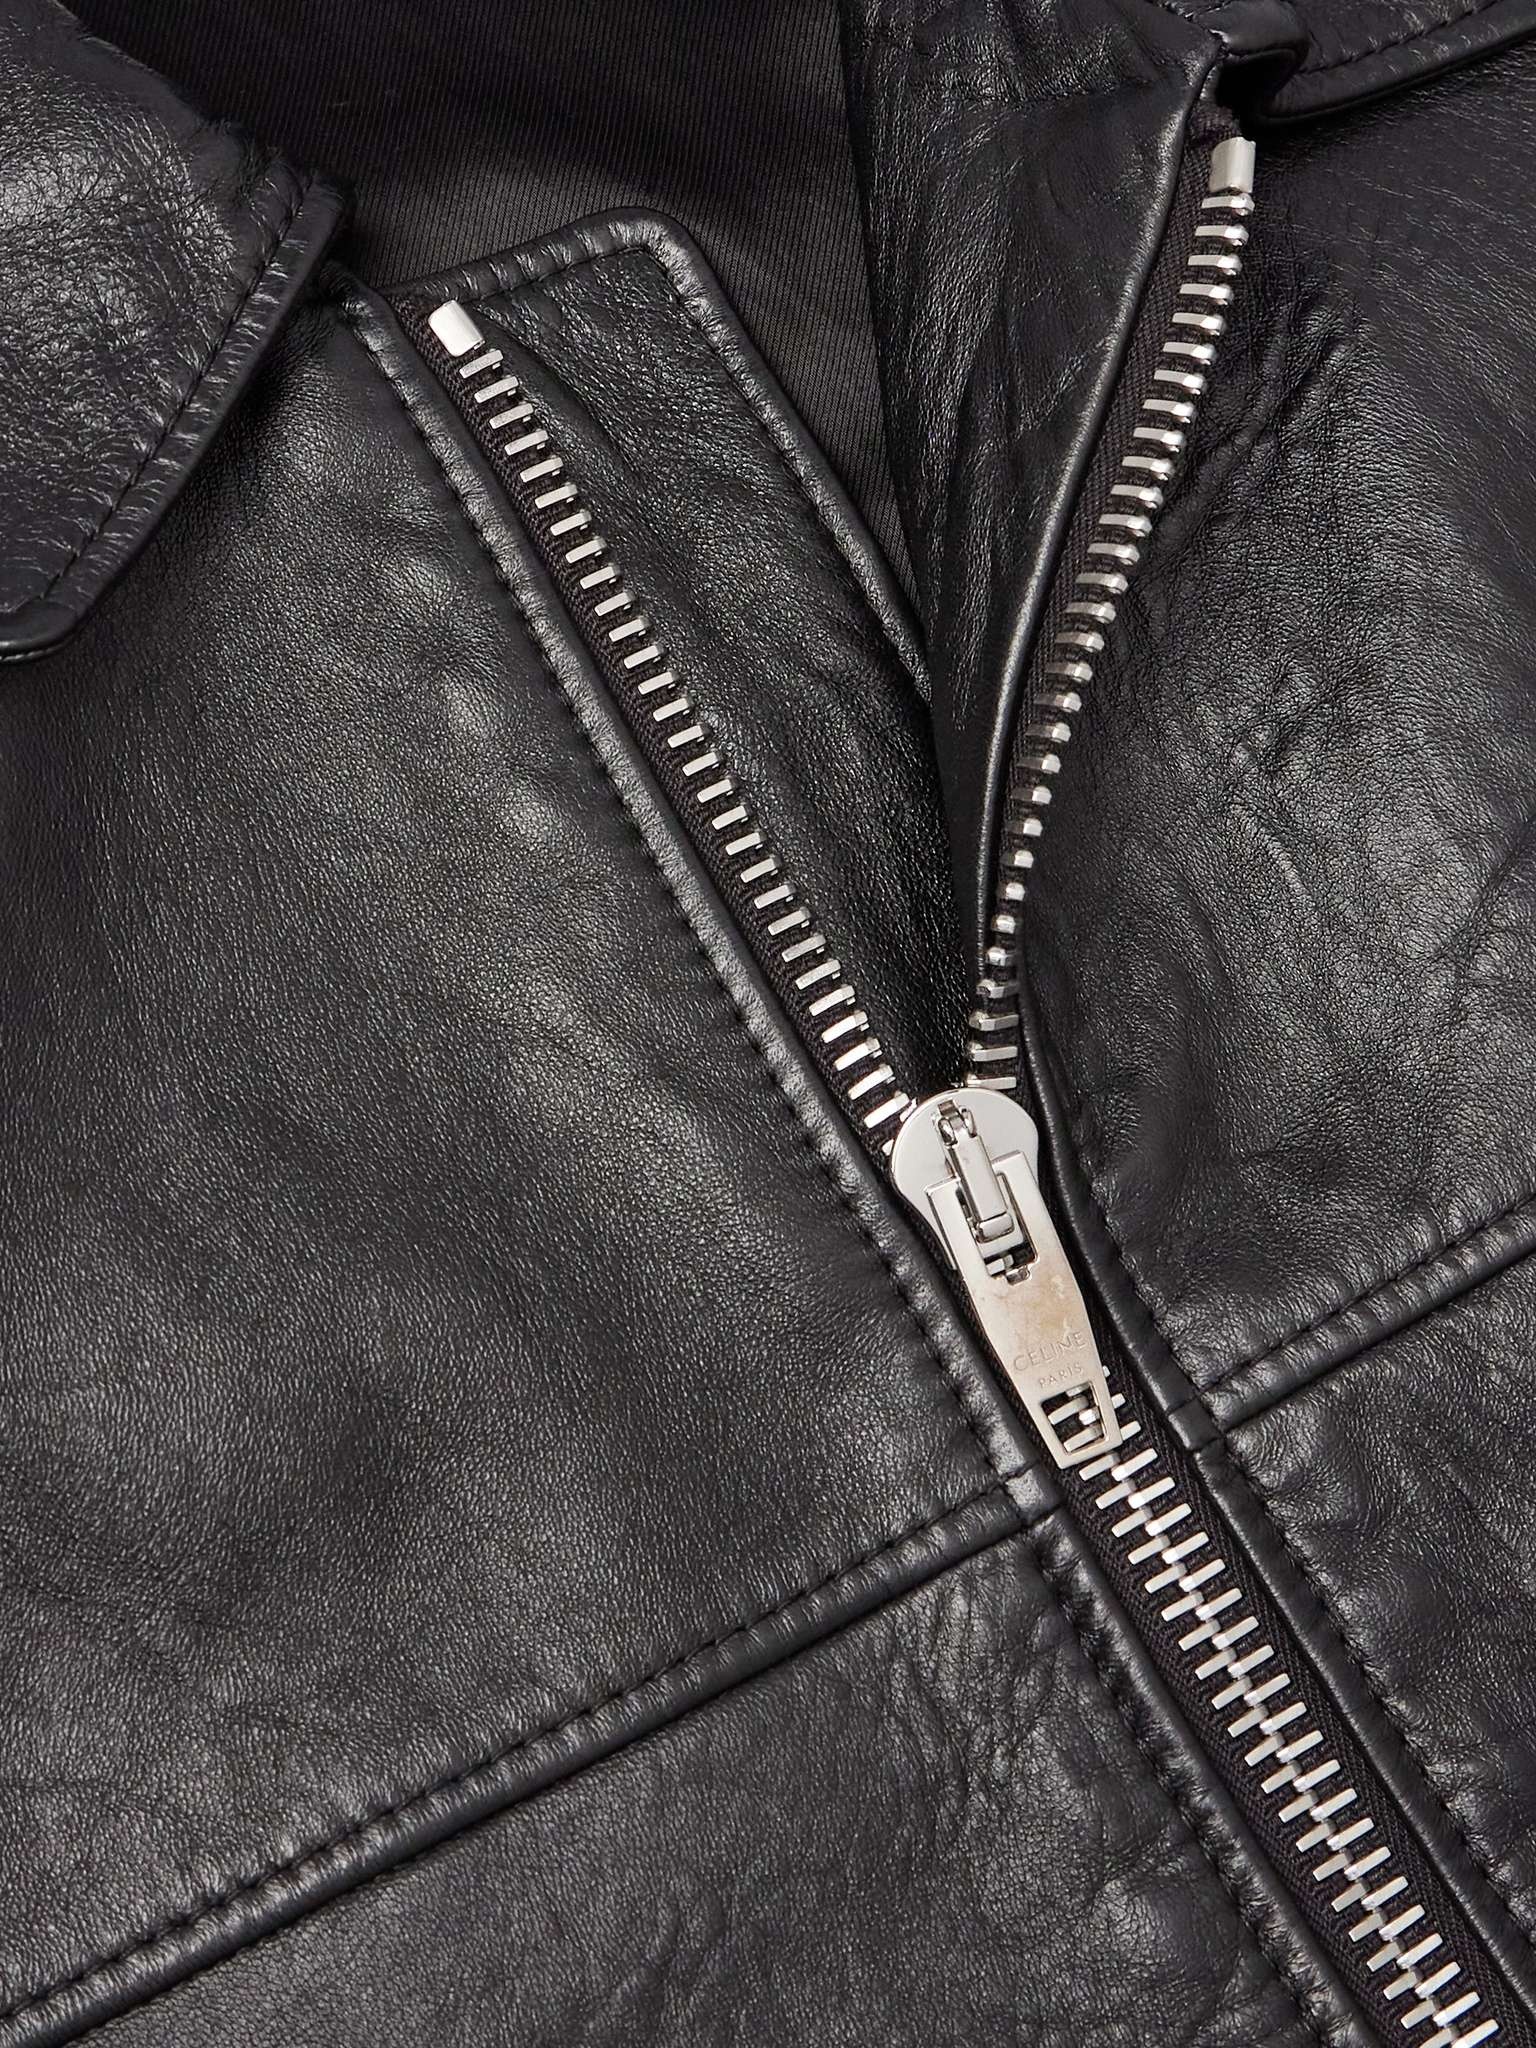 Leather Jacket - 4